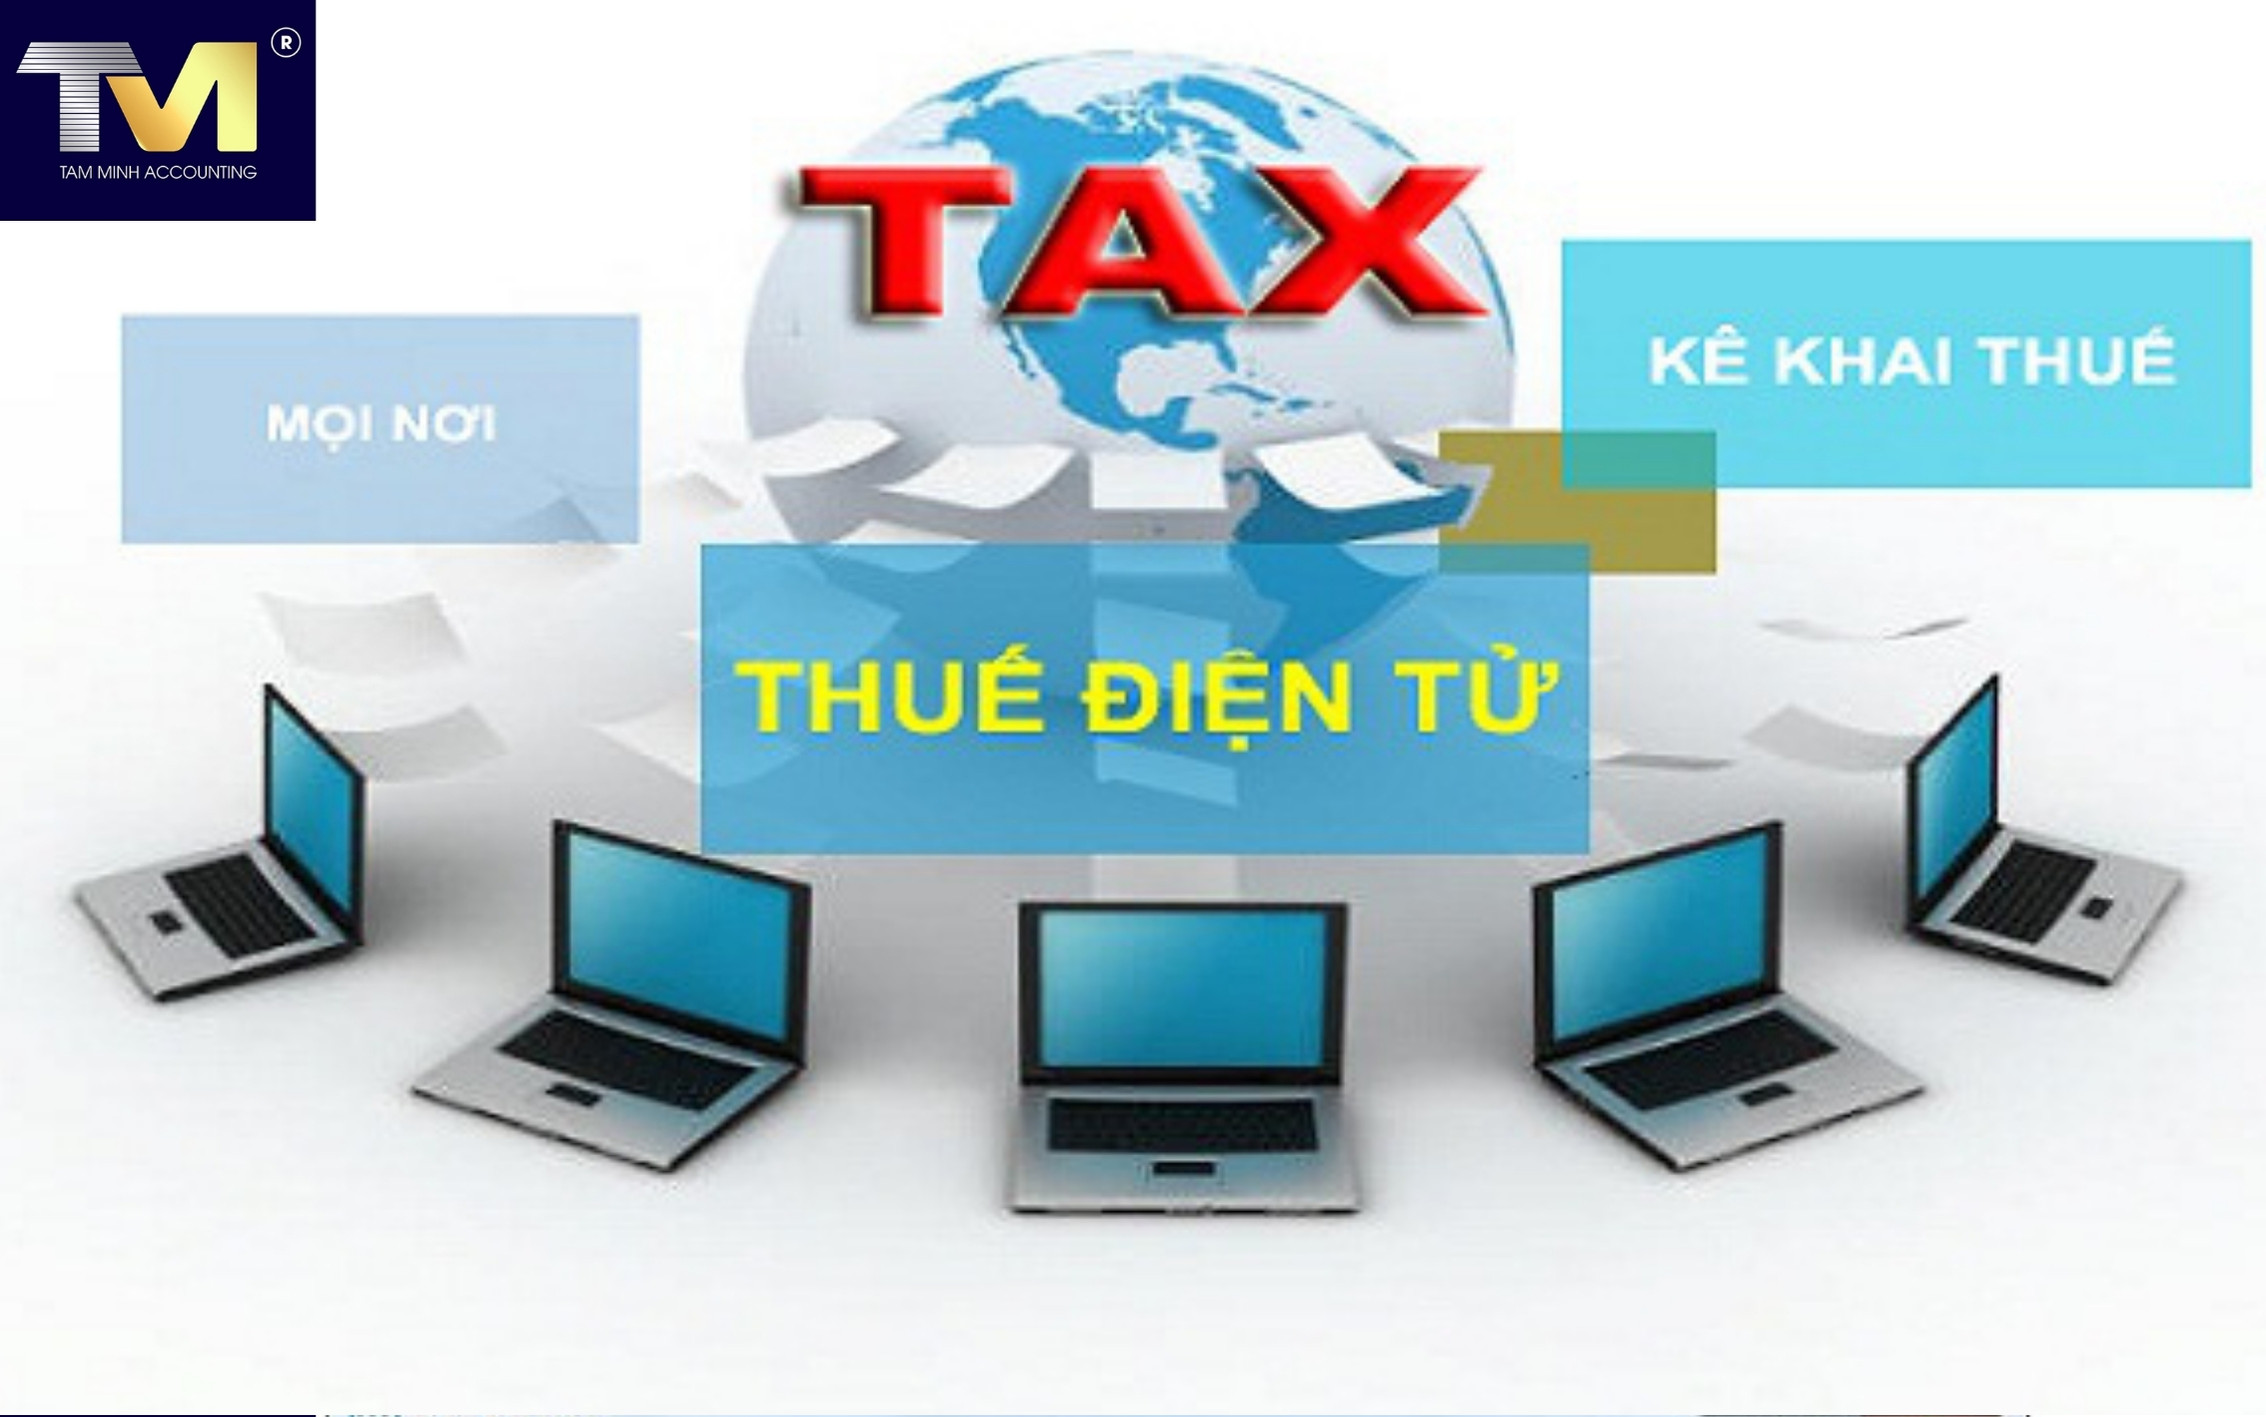 hướng dẫn kê khai thuế điện tử